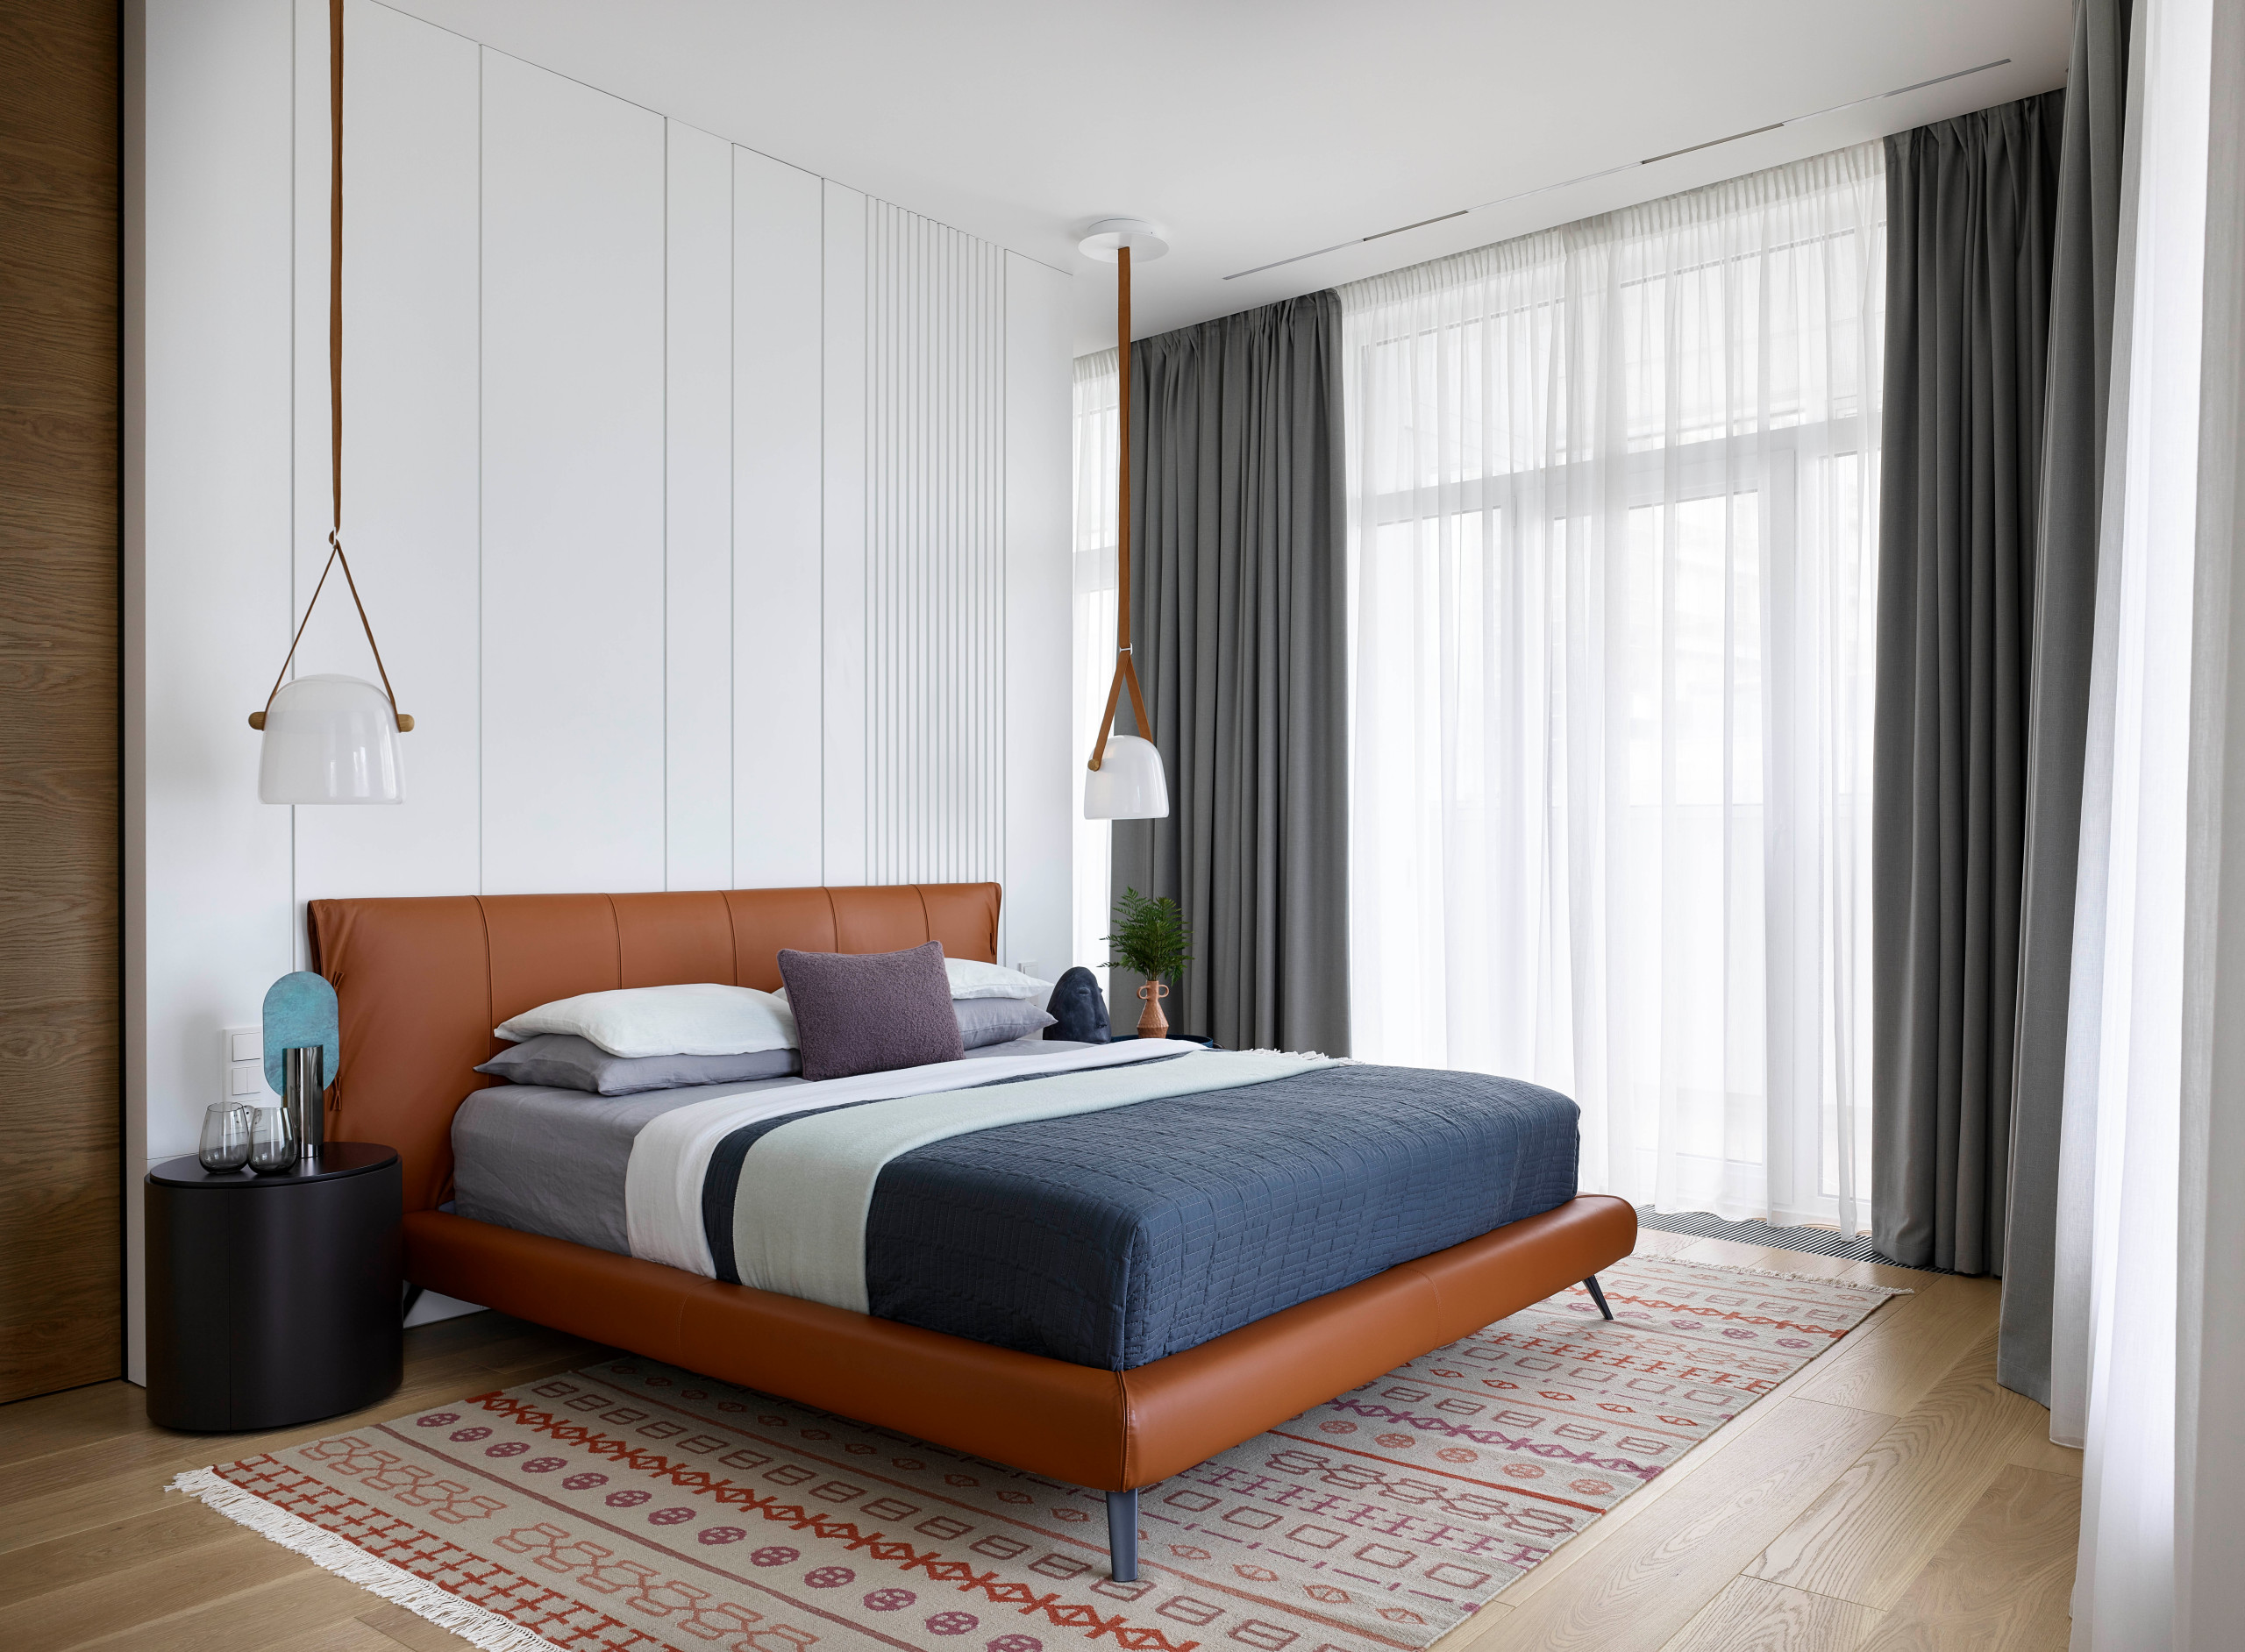 Дизайн спальни в совре­менном стиле (160 фото)